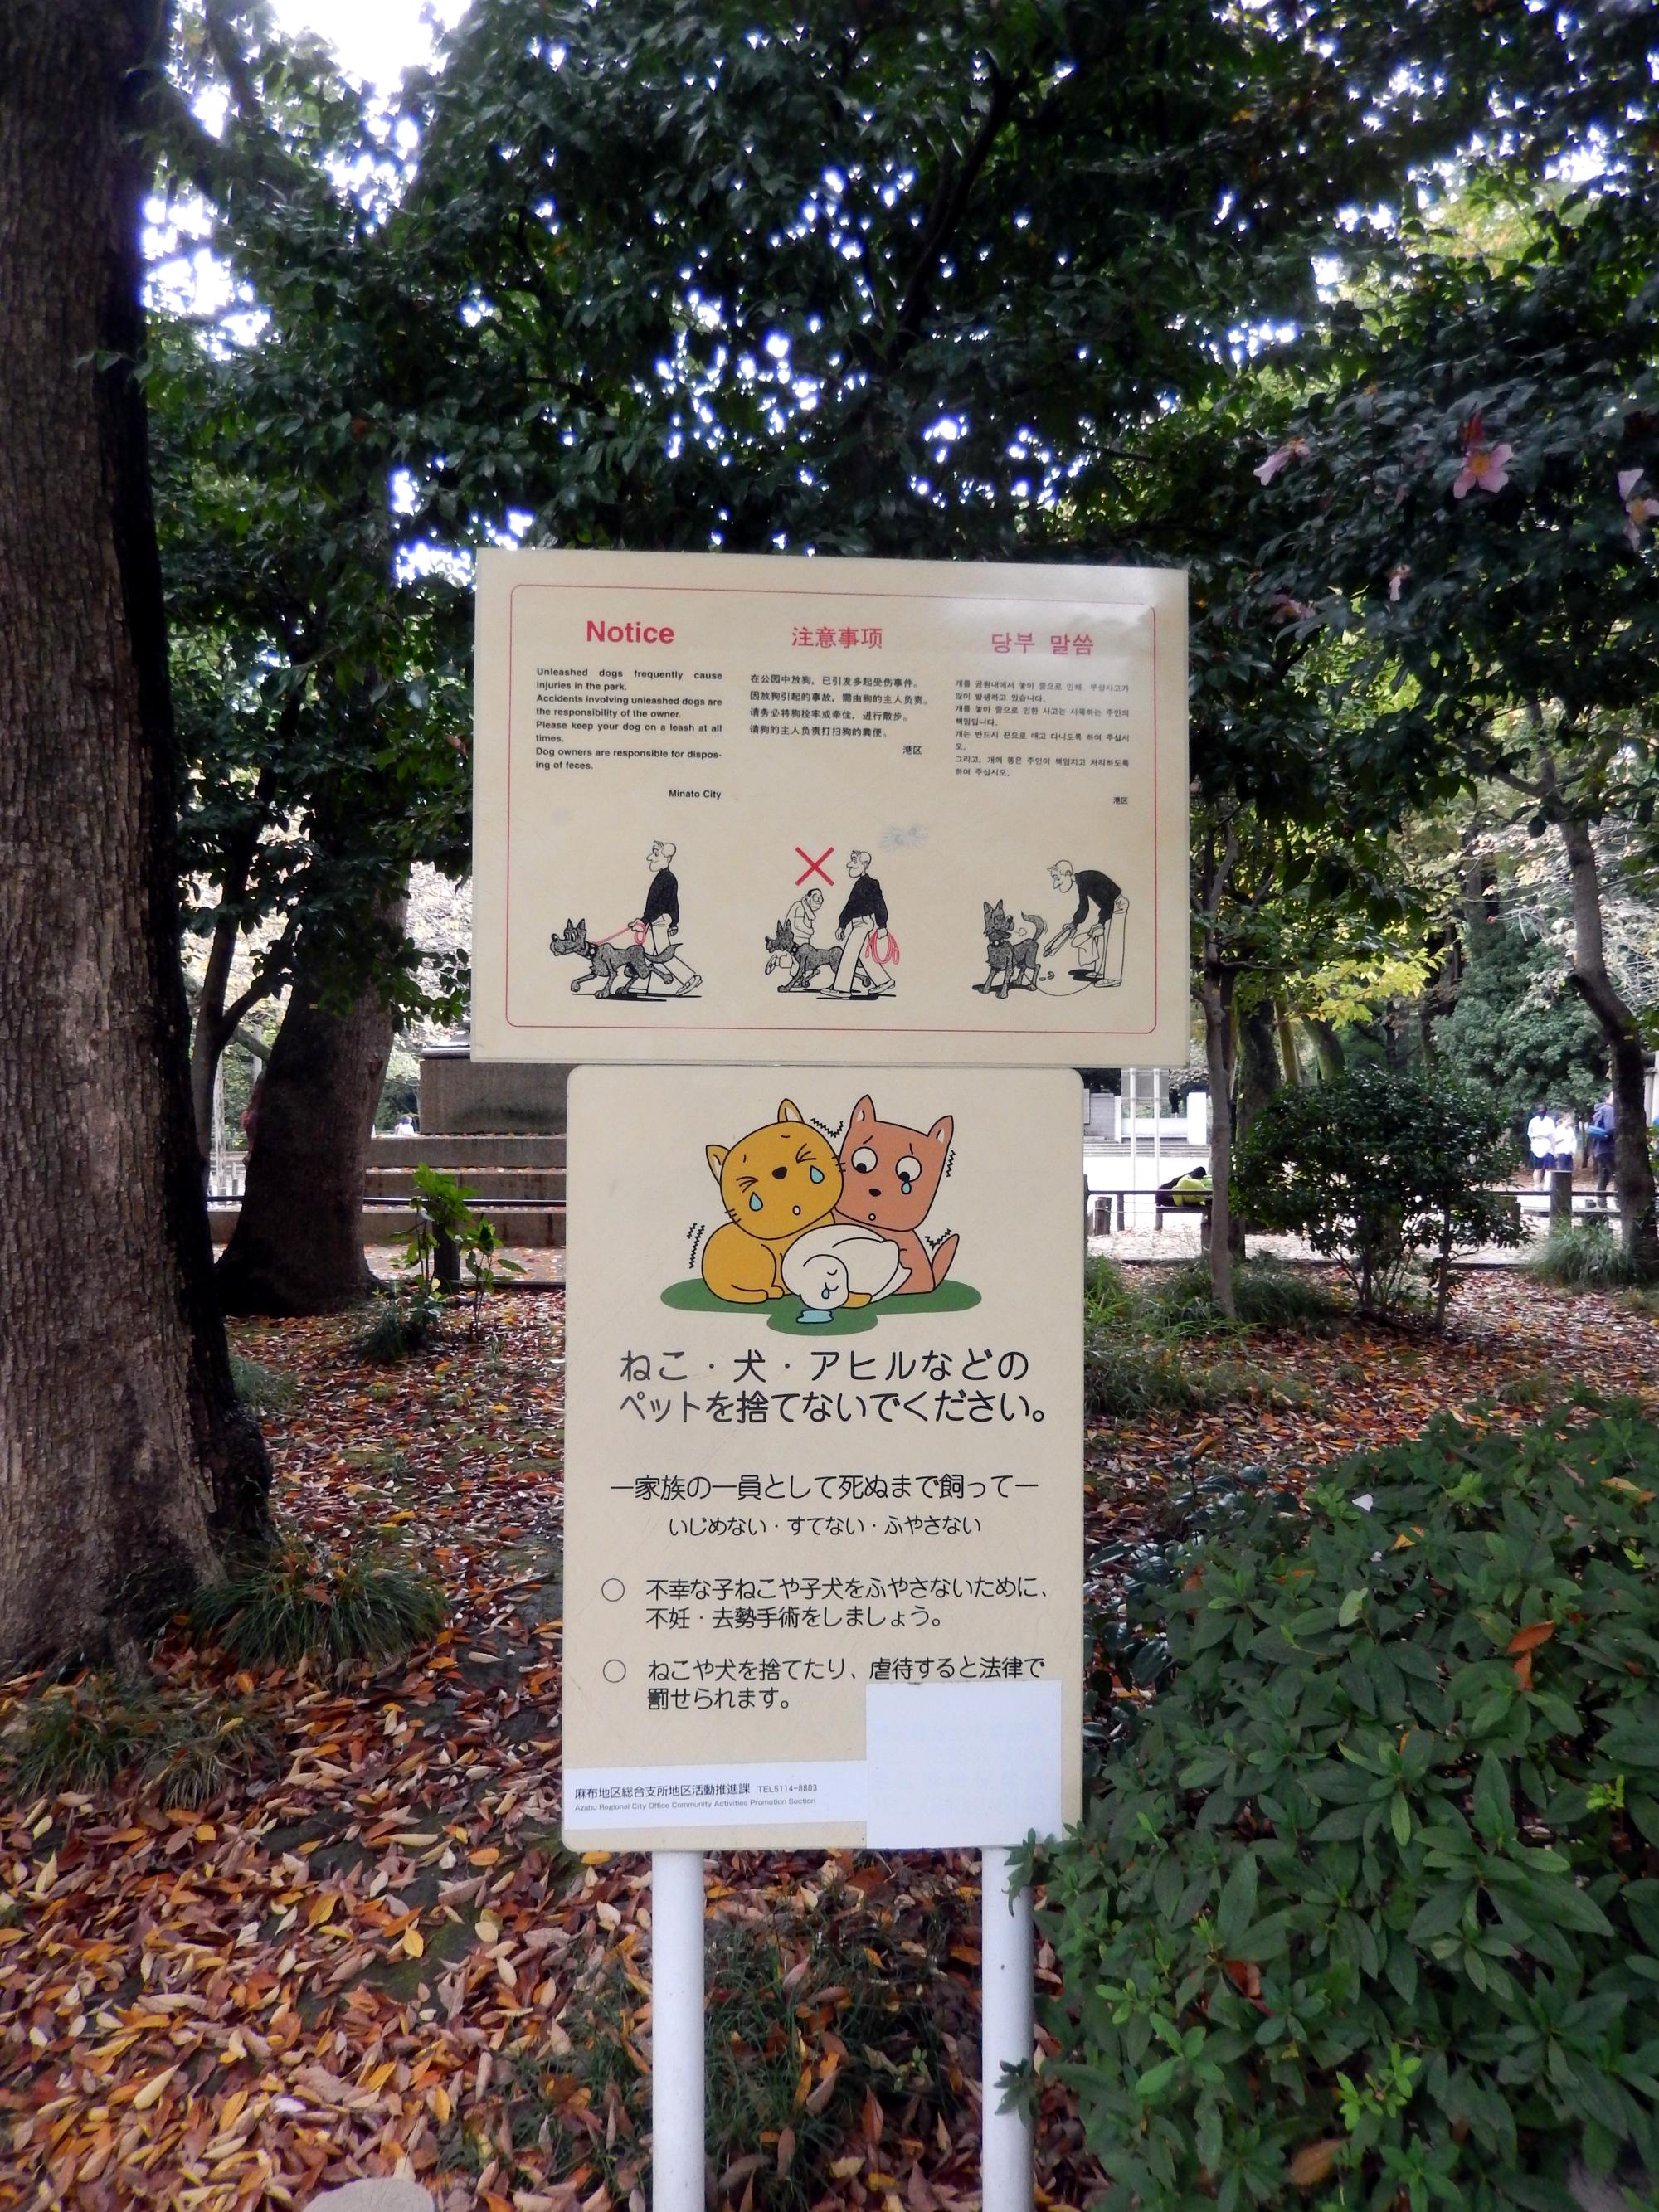 Signs Of Japan - Arisugawa Park Signs #1